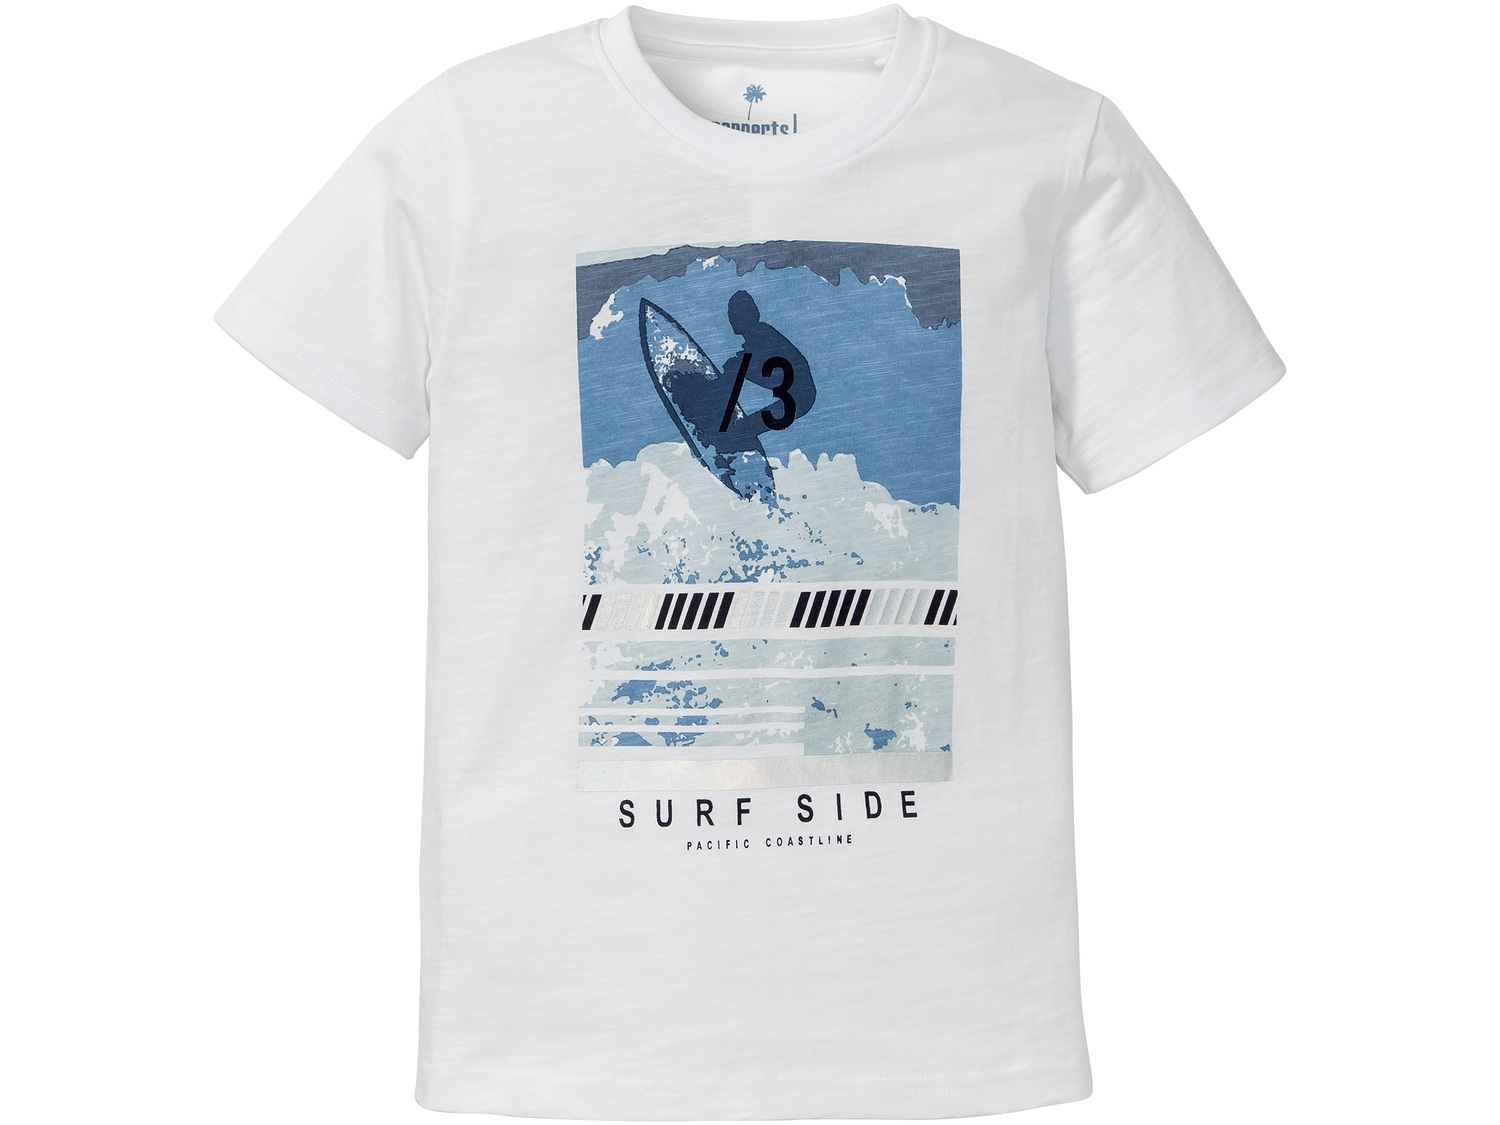 T-shirt chłopięcy Lupilu, cena 9,00 PLN 
różne wzory i rozmiary 
- 100% bawełny
Opis

- ...